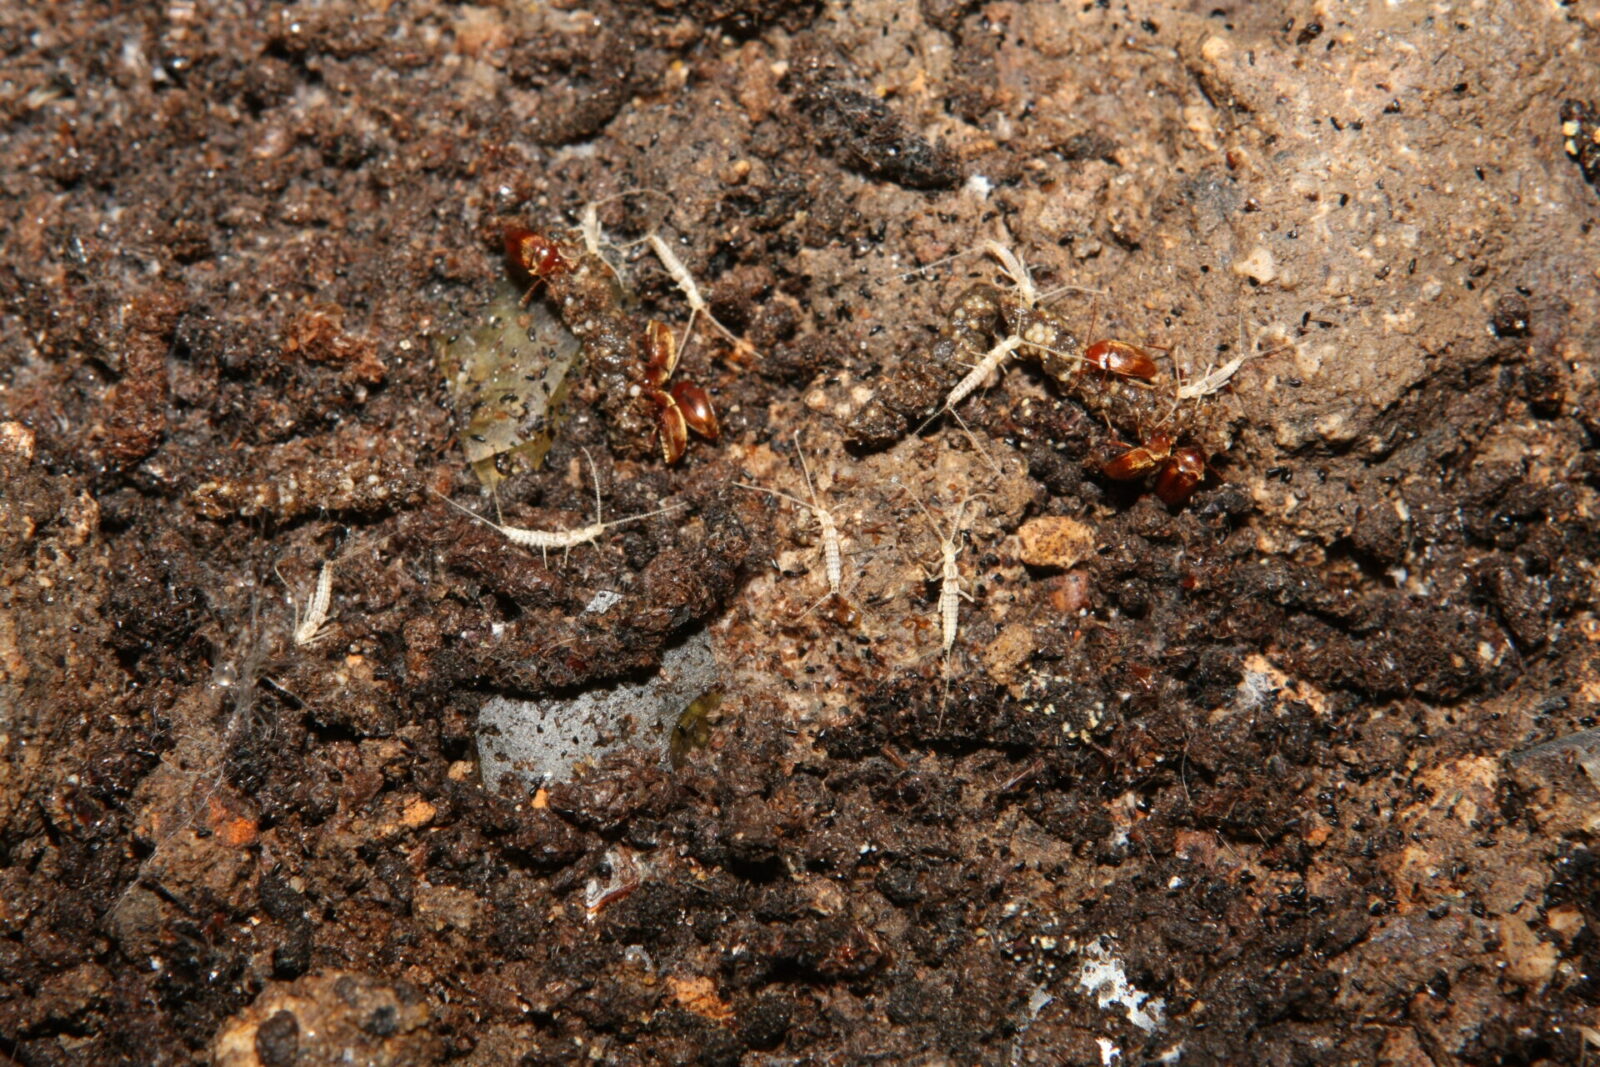 Litocampa sp. (Diploures) et Royerella villardi (Coléoptère), espèces troglobies (spécialisées des milieux souterrains)